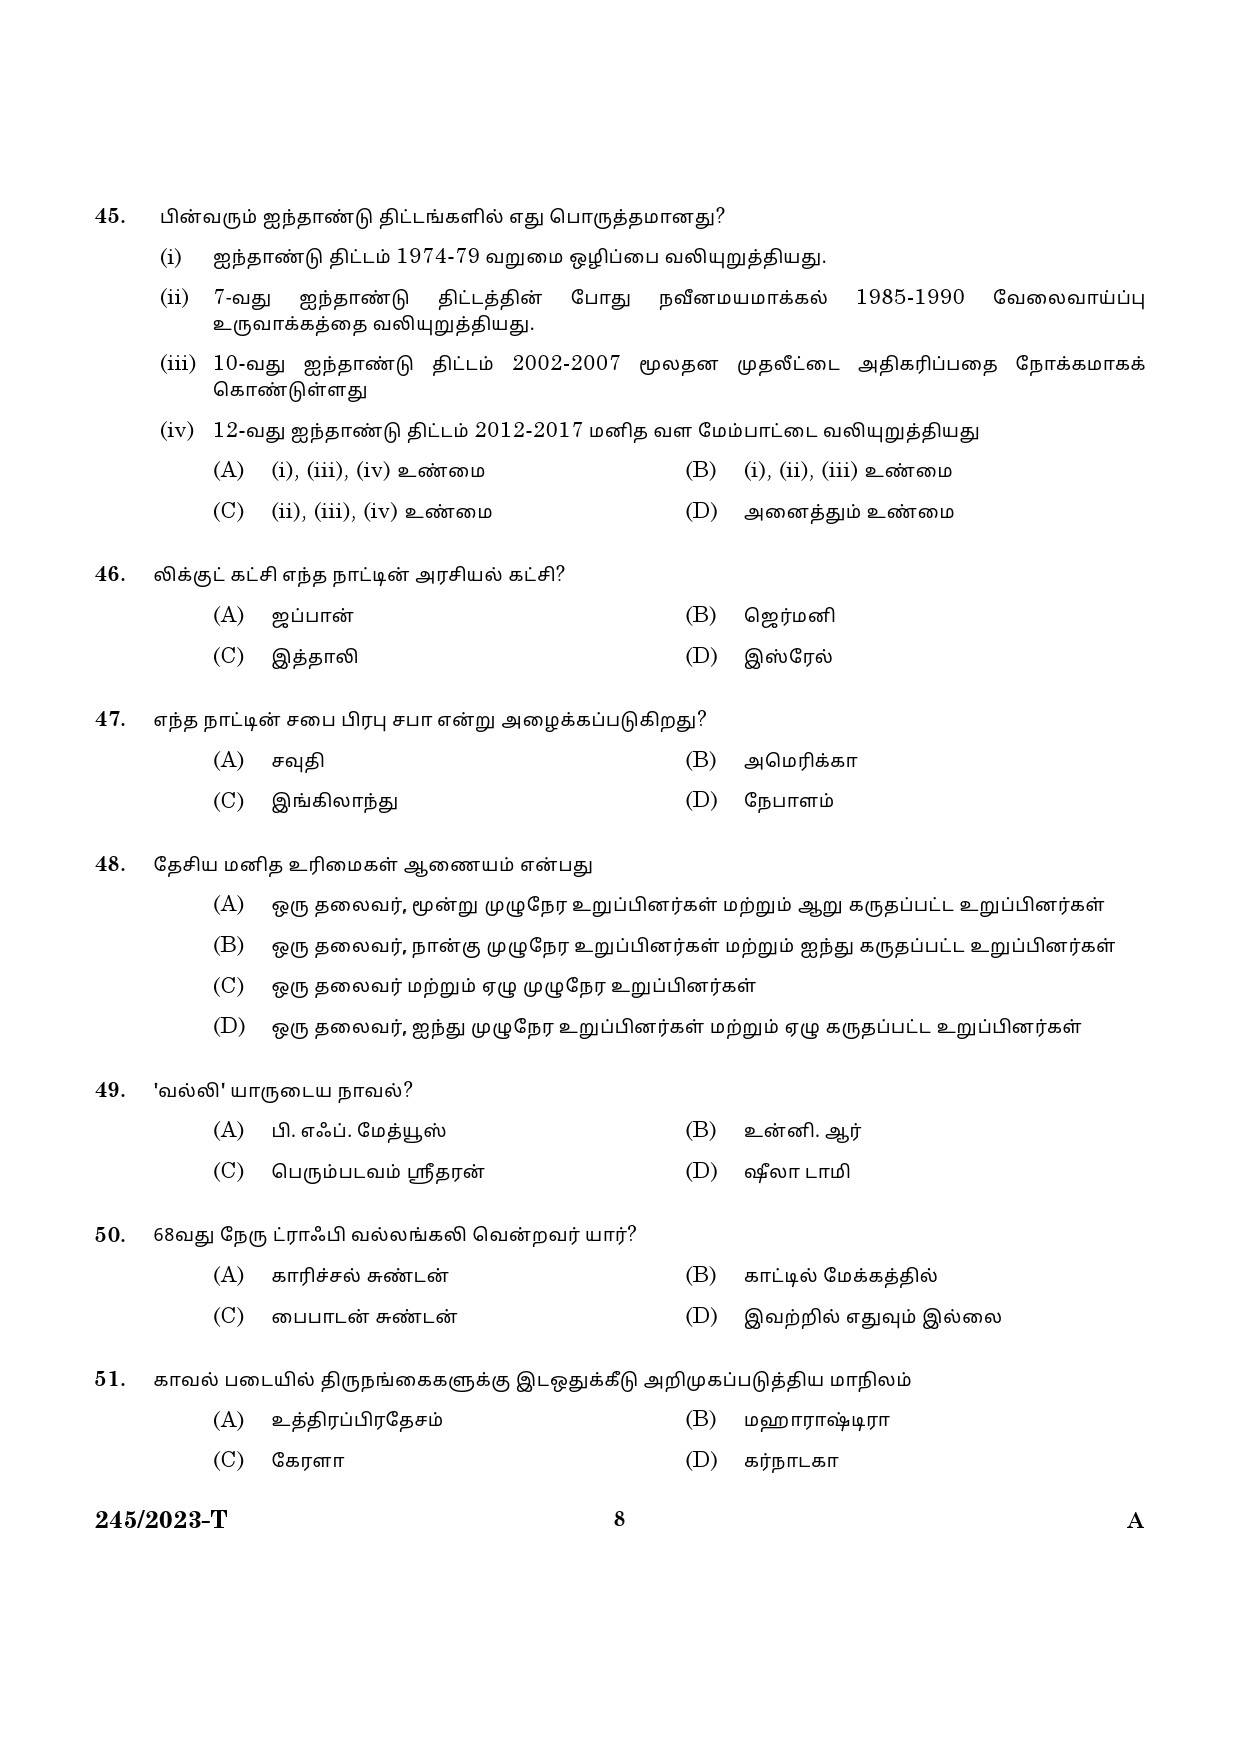 KPSC LGS Tamil Exam 2023 Code 2452023 T 6